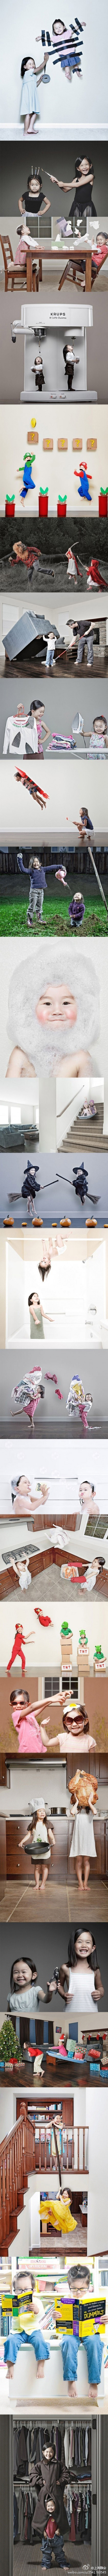 创意爸爸Jason Lee和两个疯狂女儿的创意照片组图